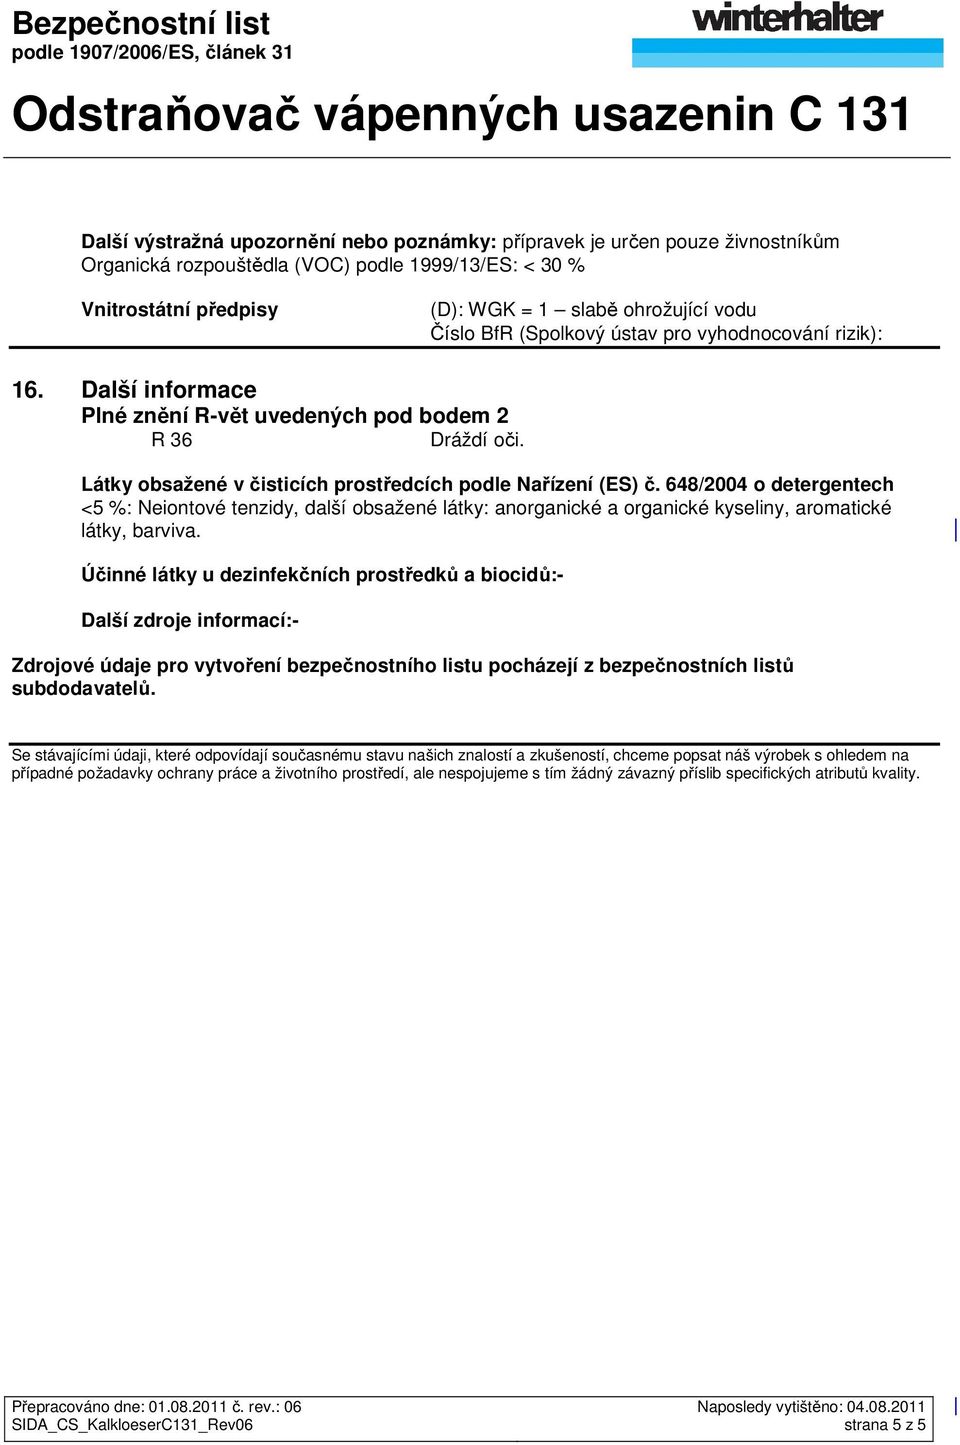 648/2004 o detergentech <5 %: Neiontové tenzidy, další obsažené látky: anorganické a organické kyseliny, aromatické látky, barviva.